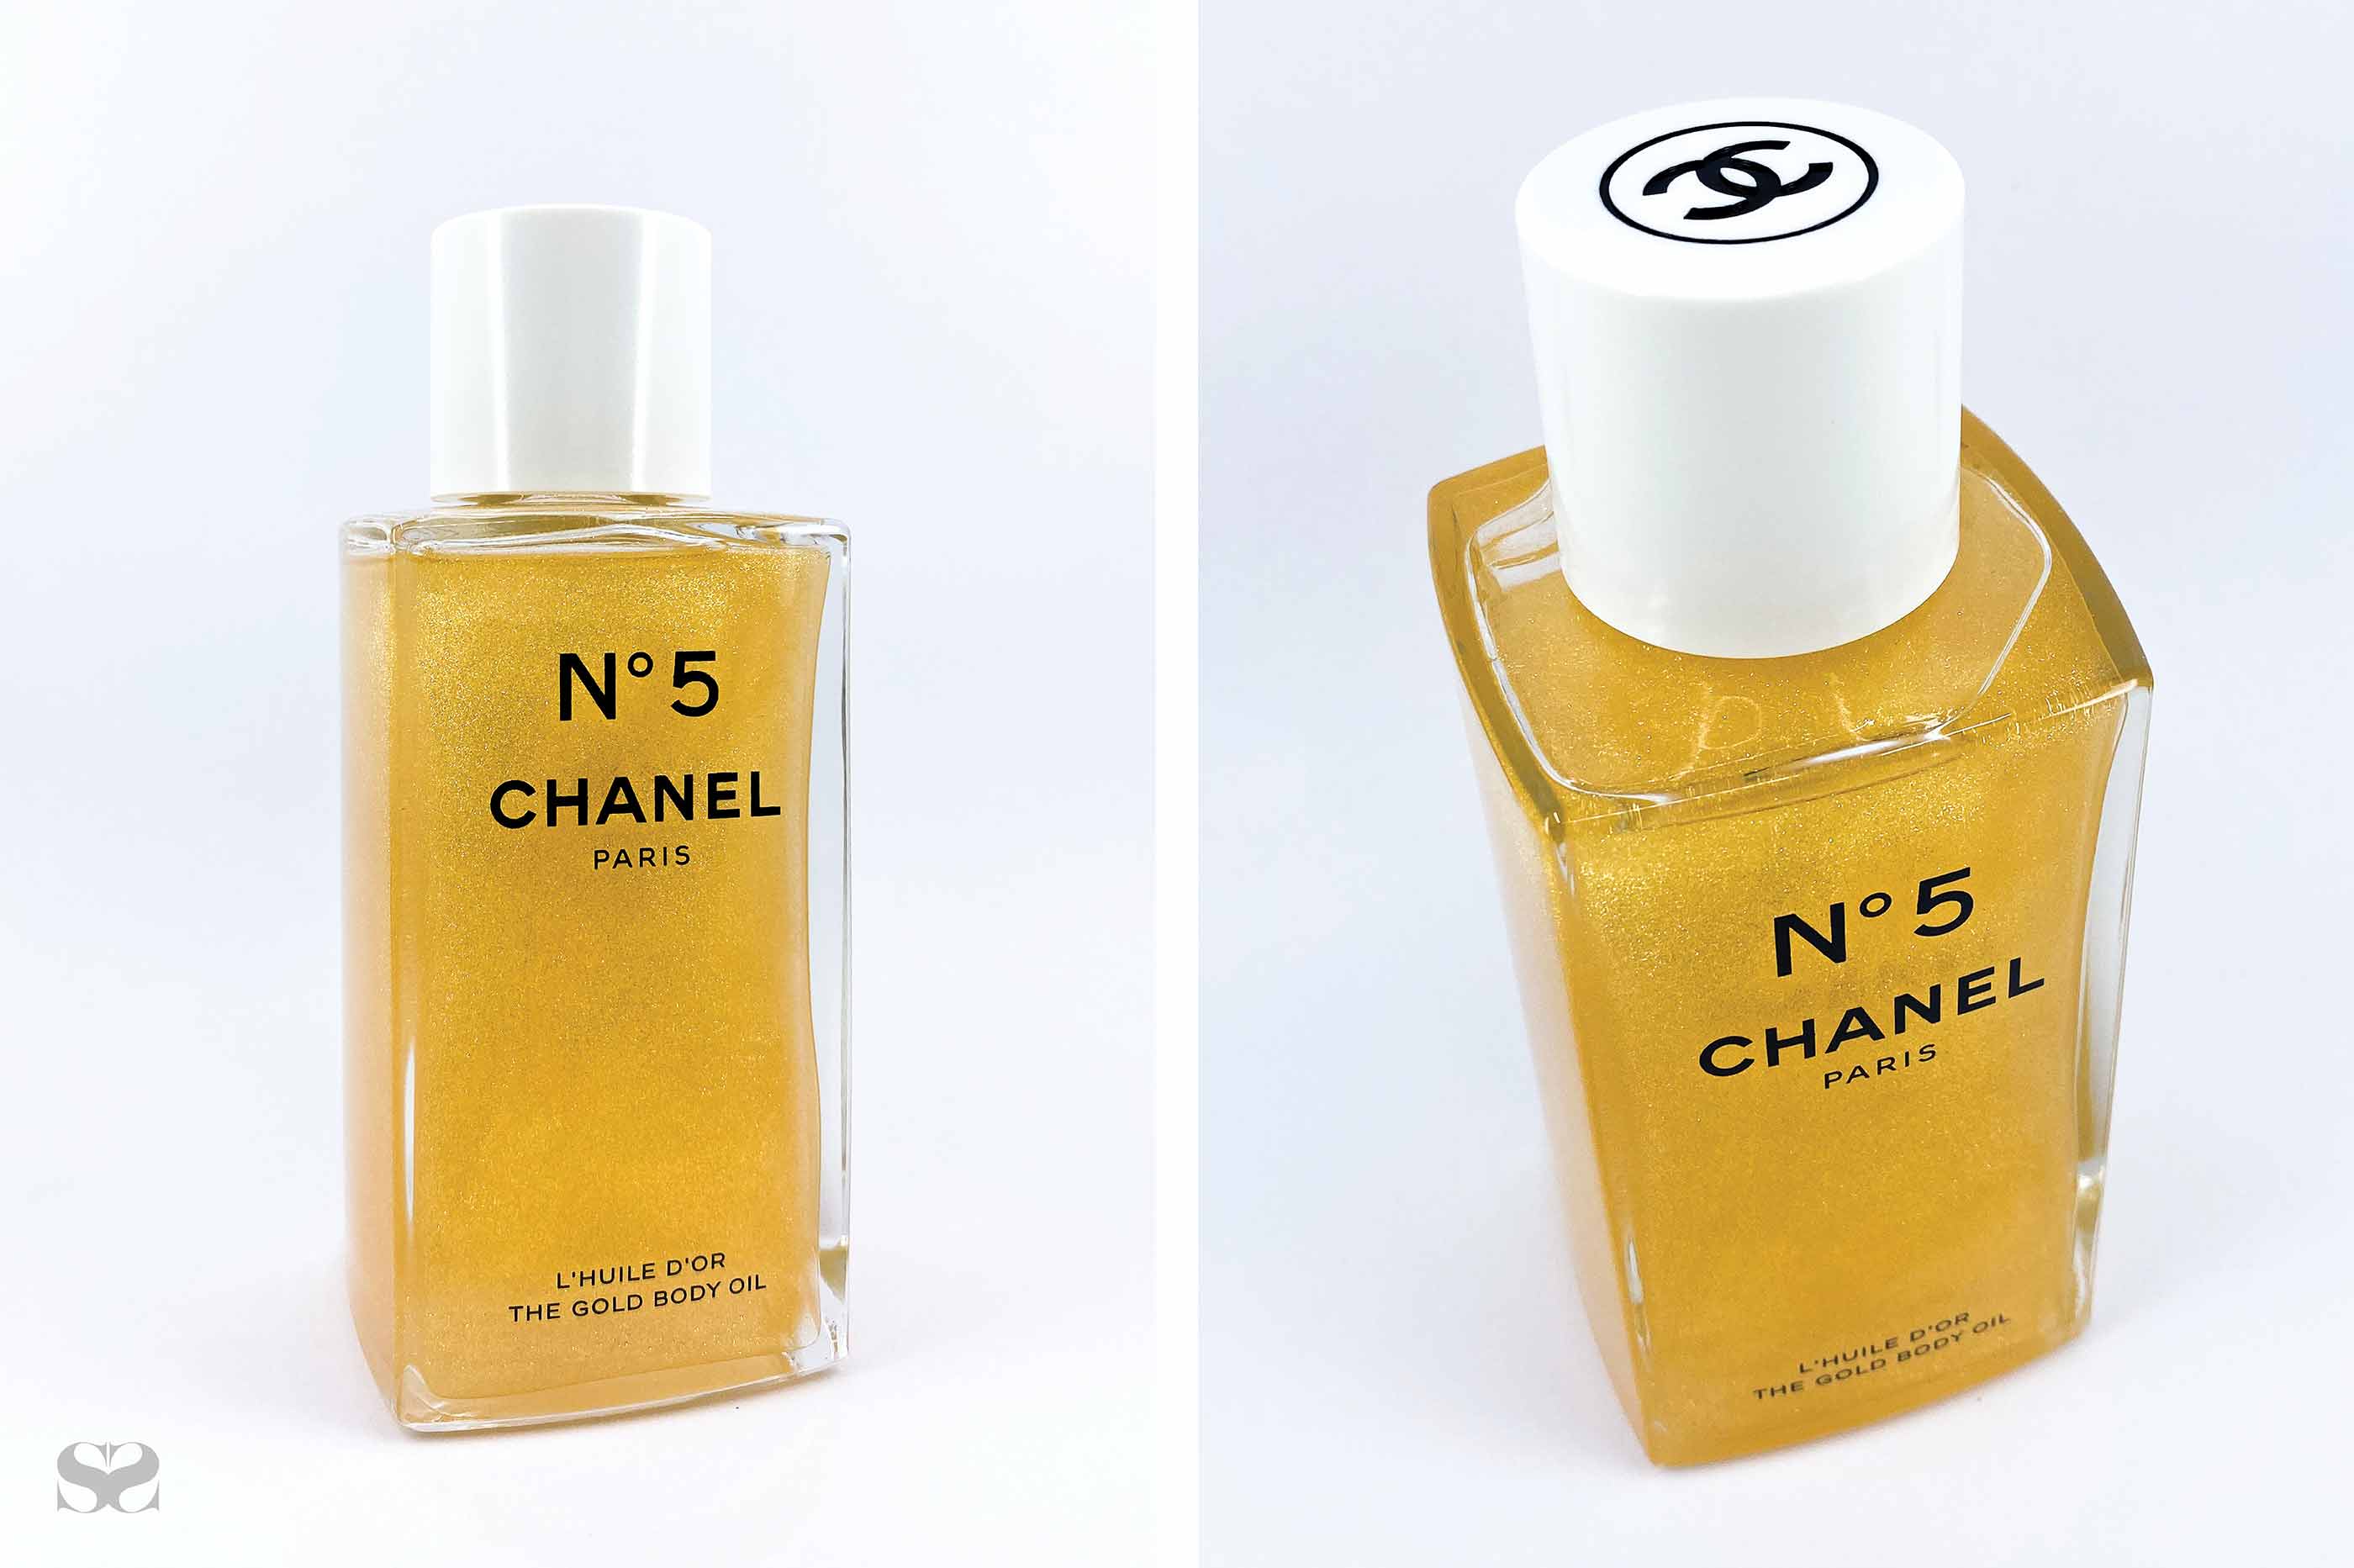 Chanel No. 5 Type Body Oil (L) – E Perfume Bar